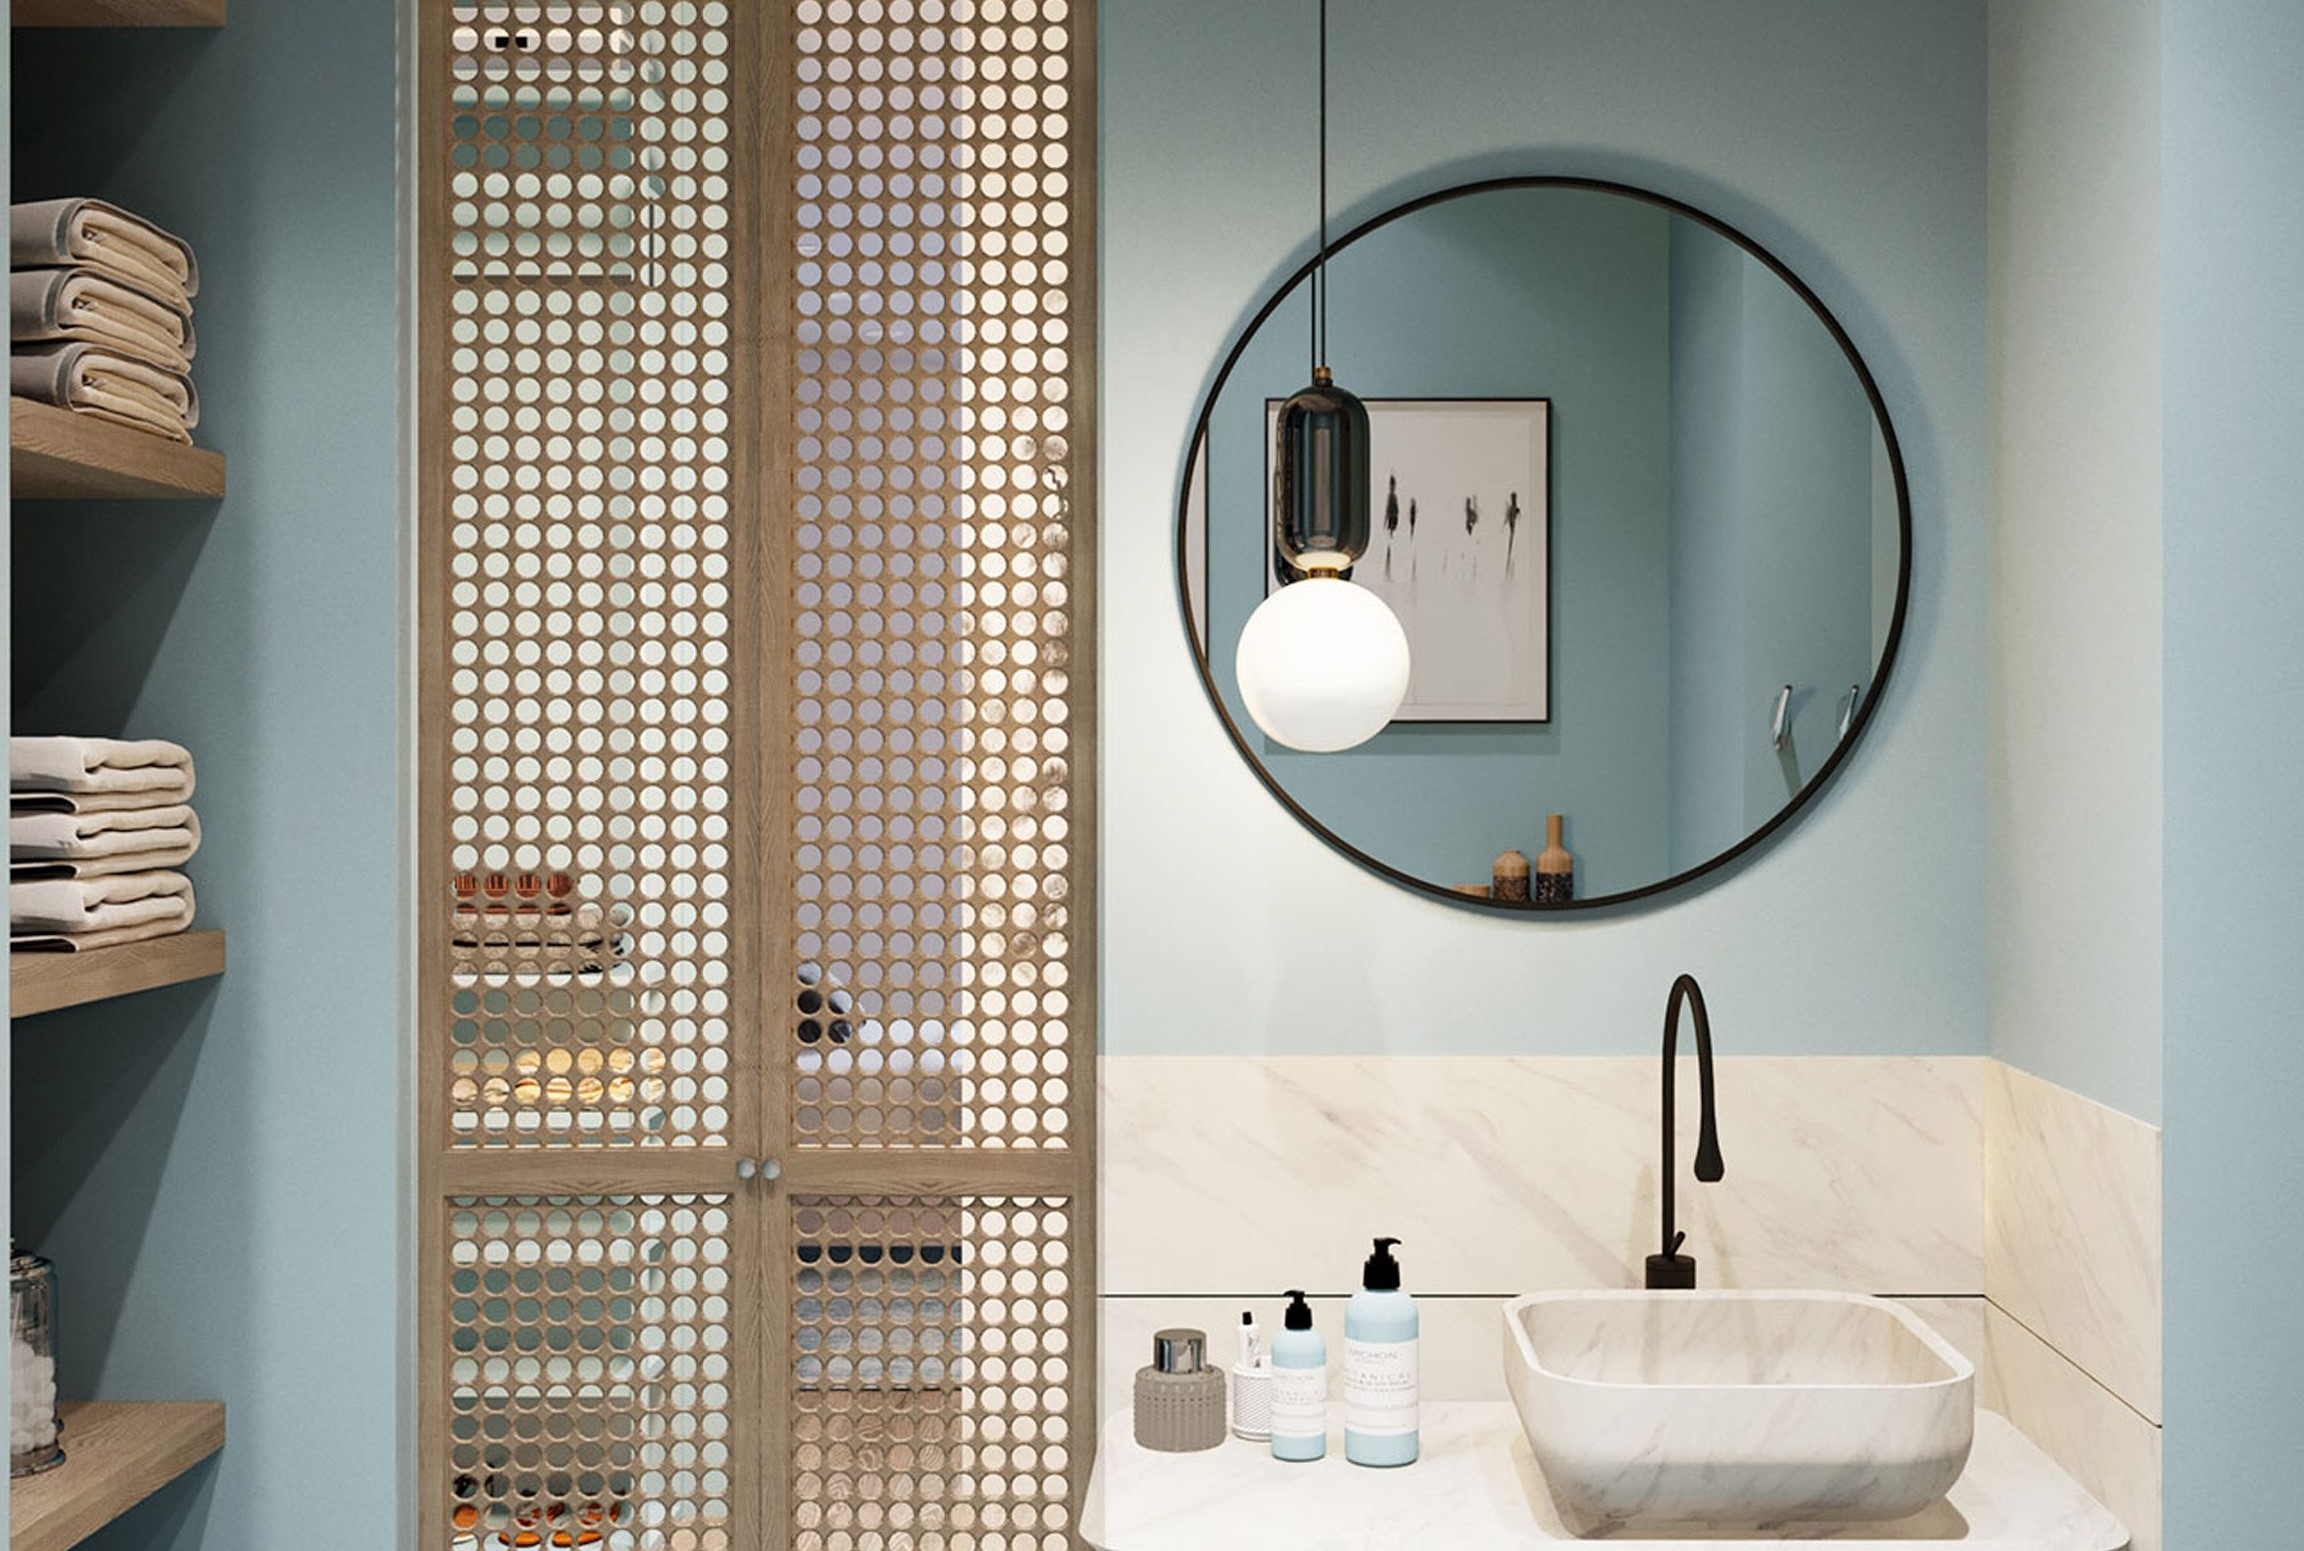 Chọn mua gương nhà tắm Inax: Nếu bạn đang tìm kiếm một sản phẩm gương nhà tắm đẹp và chất lượng cao, hãy cân nhắc đến thương hiệu Inax. Inax mang đến cho khách hàng những sản phẩm gương nhà tắm đa dạng về kiểu dáng và chất liệu, giúp bạn làm mới không gian của mình một cách dễ dàng.